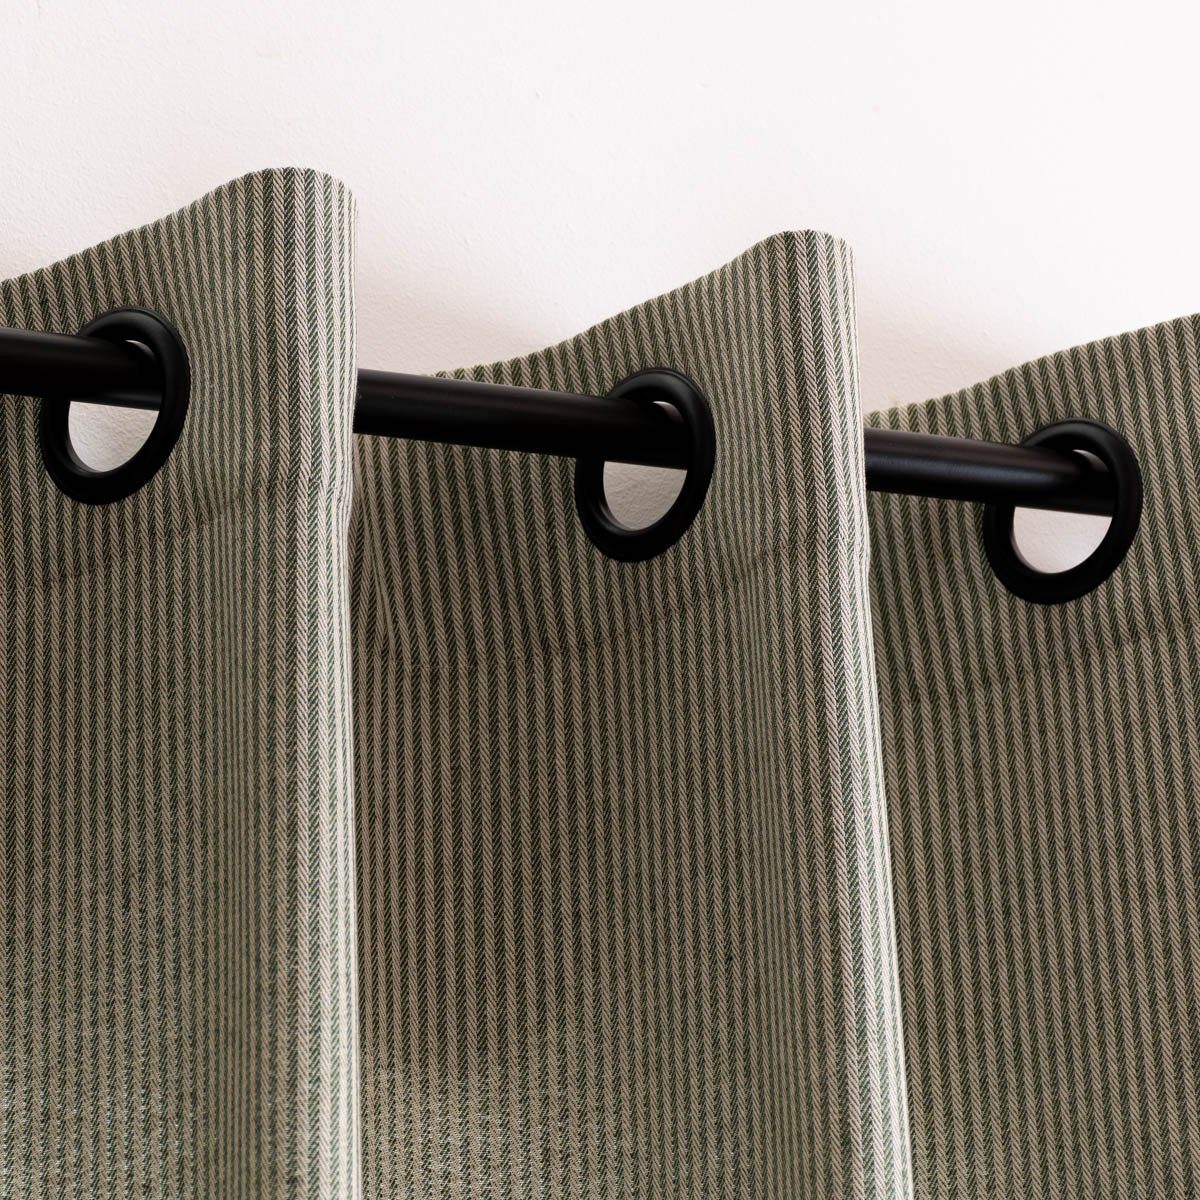 Vorhang Ösengardine Streifen grün beige Ösen schwarz 130x245cm SCHÖNER  LEBEN., SCHÖNER LEBEN., Ösen (1 St), blickdicht, Kunstfaser, handmade, made  in Germany, pflegeleicht, vorgewaschen